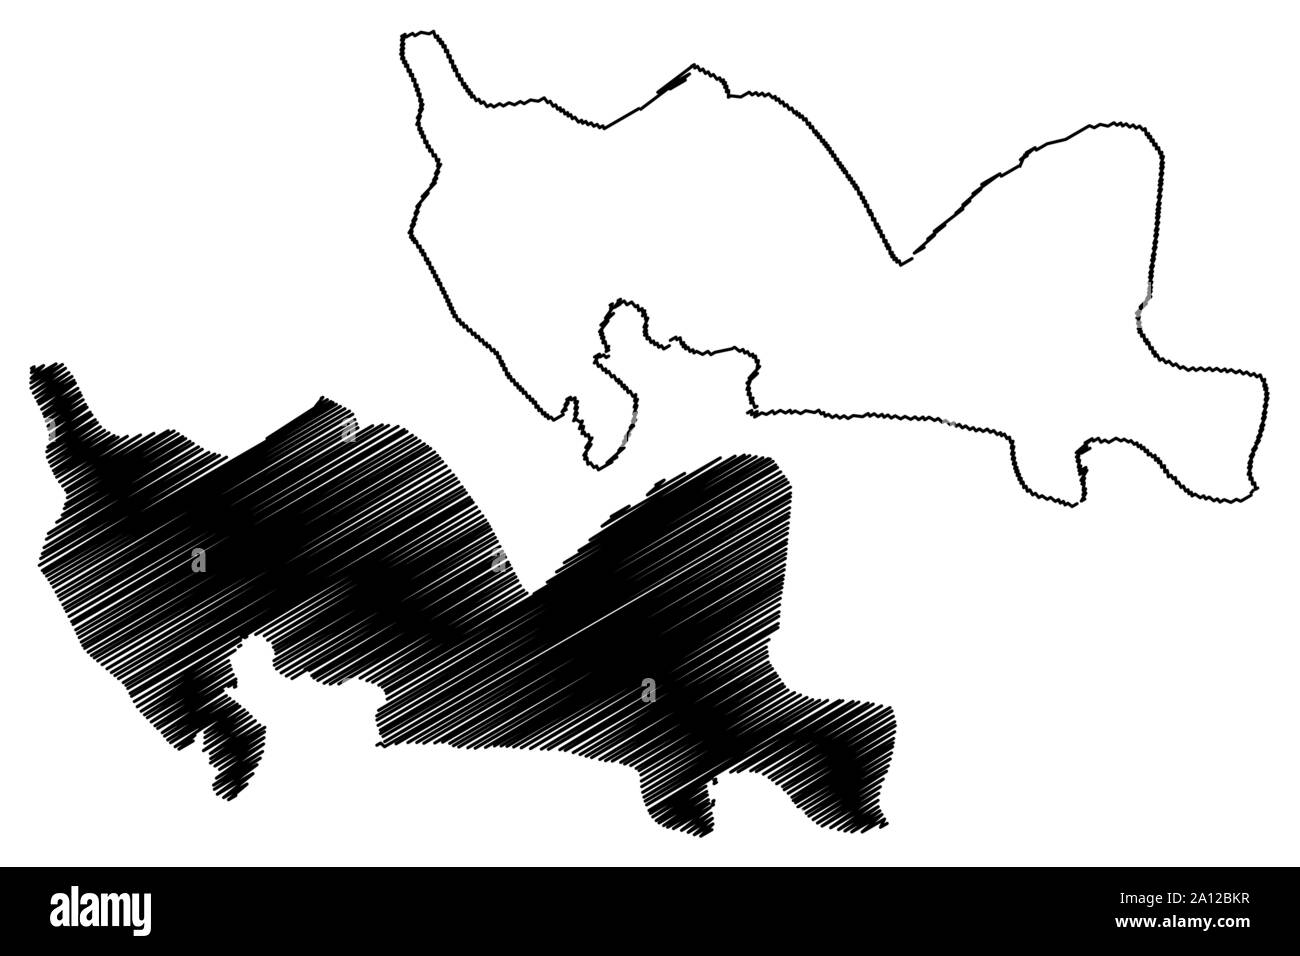 Santo Domingo provincia (Repubblica Dominicana, Hispaniola, Province della Repubblica Dominicana) mappa illustrazione vettoriale, scribble schizzo Santo Domingo ma Illustrazione Vettoriale